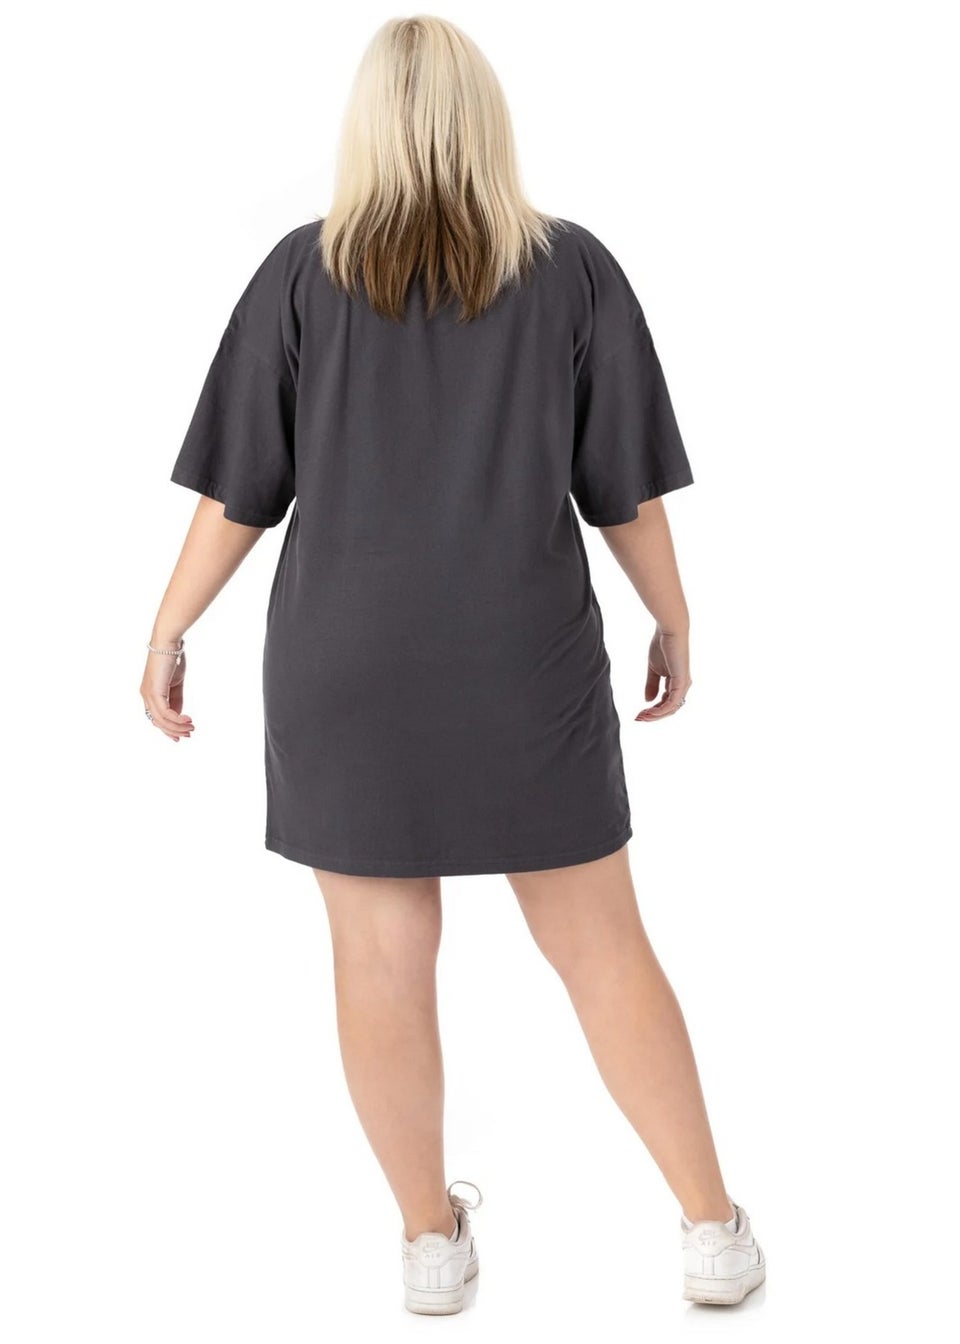 Pusheen Charcoal Grey Oversized T-Shirt Dress